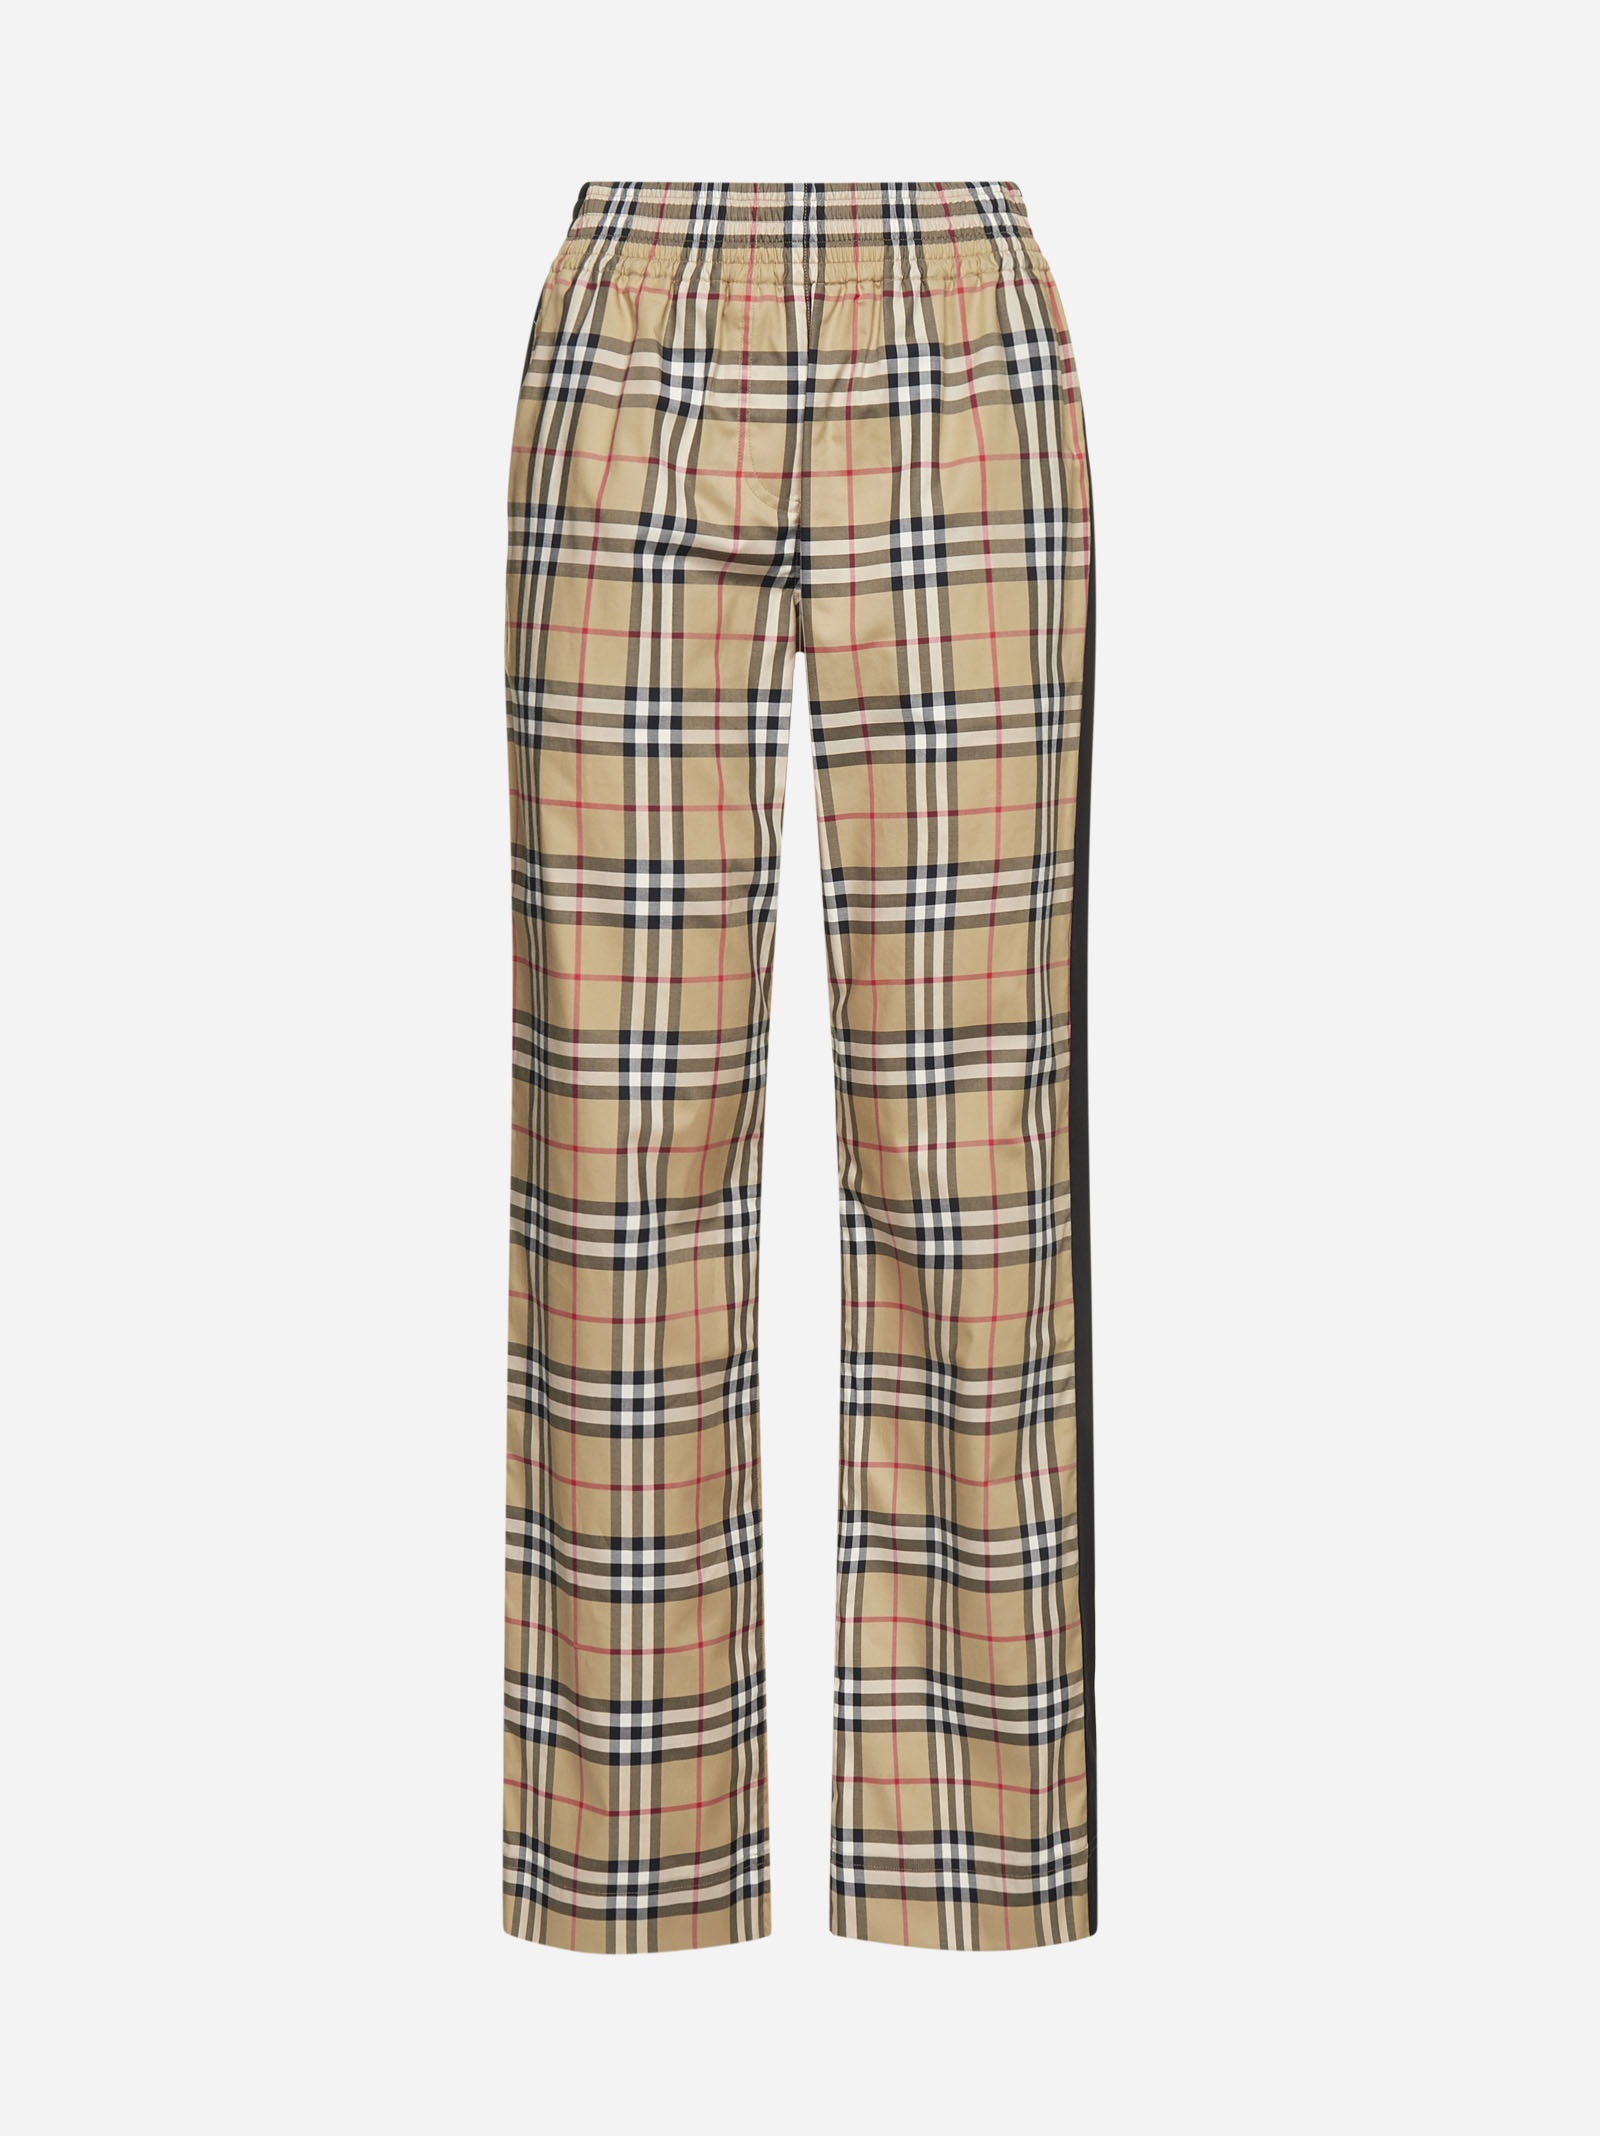 Lowane check print cotton trousers - 1